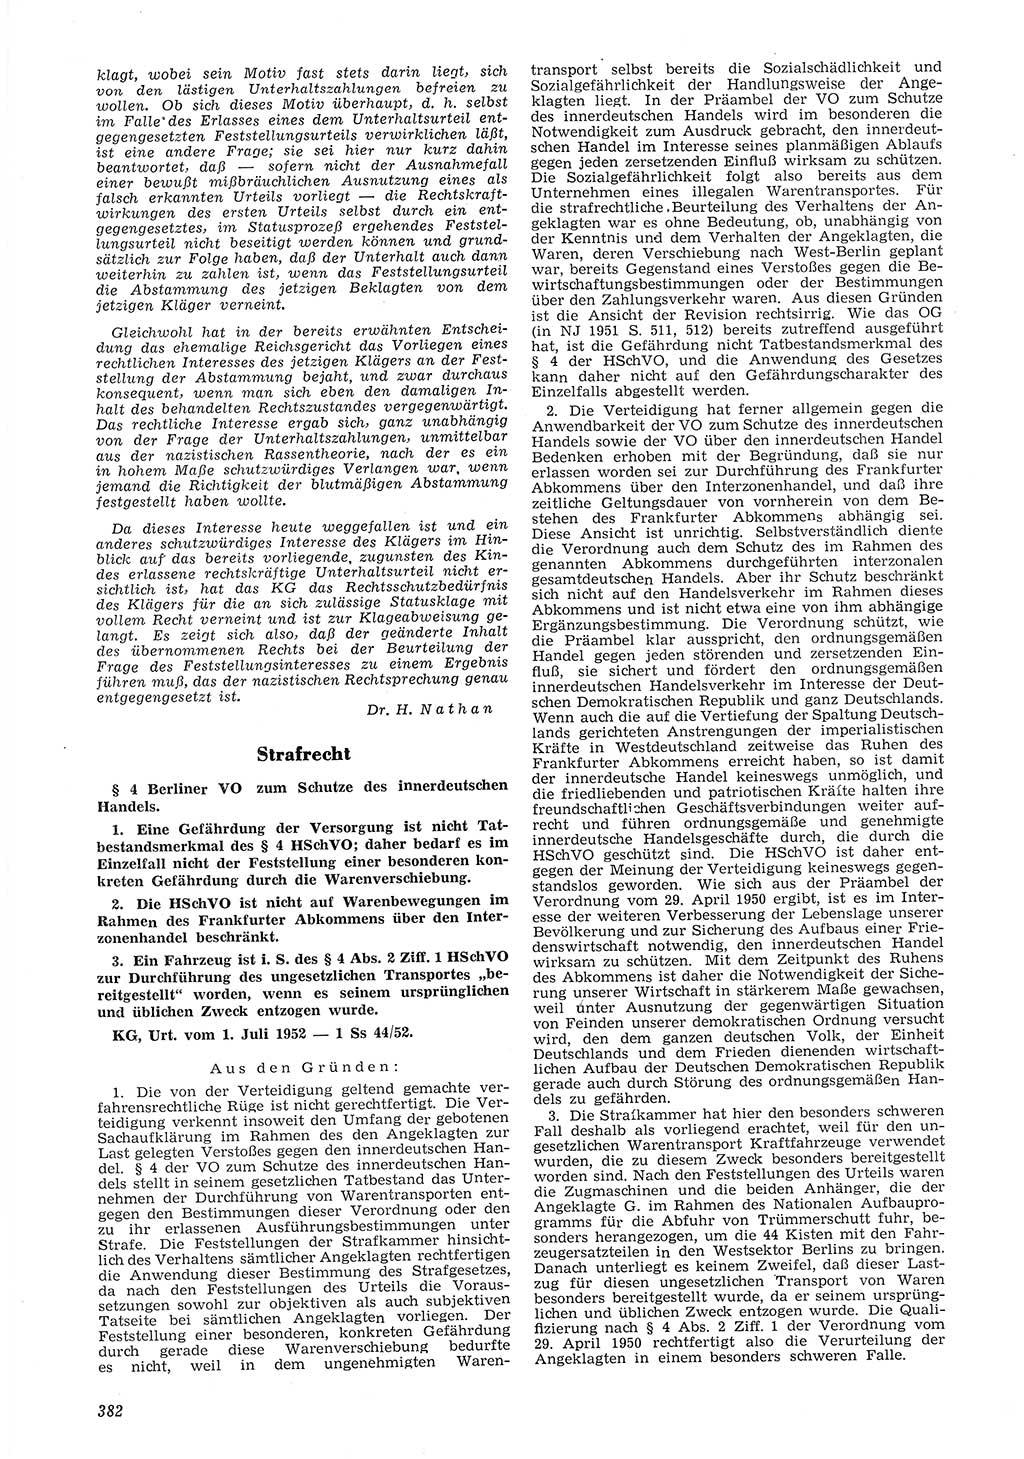 Neue Justiz (NJ), Zeitschrift für Recht und Rechtswissenschaft [Deutsche Demokratische Republik (DDR)], 6. Jahrgang 1952, Seite 382 (NJ DDR 1952, S. 382)